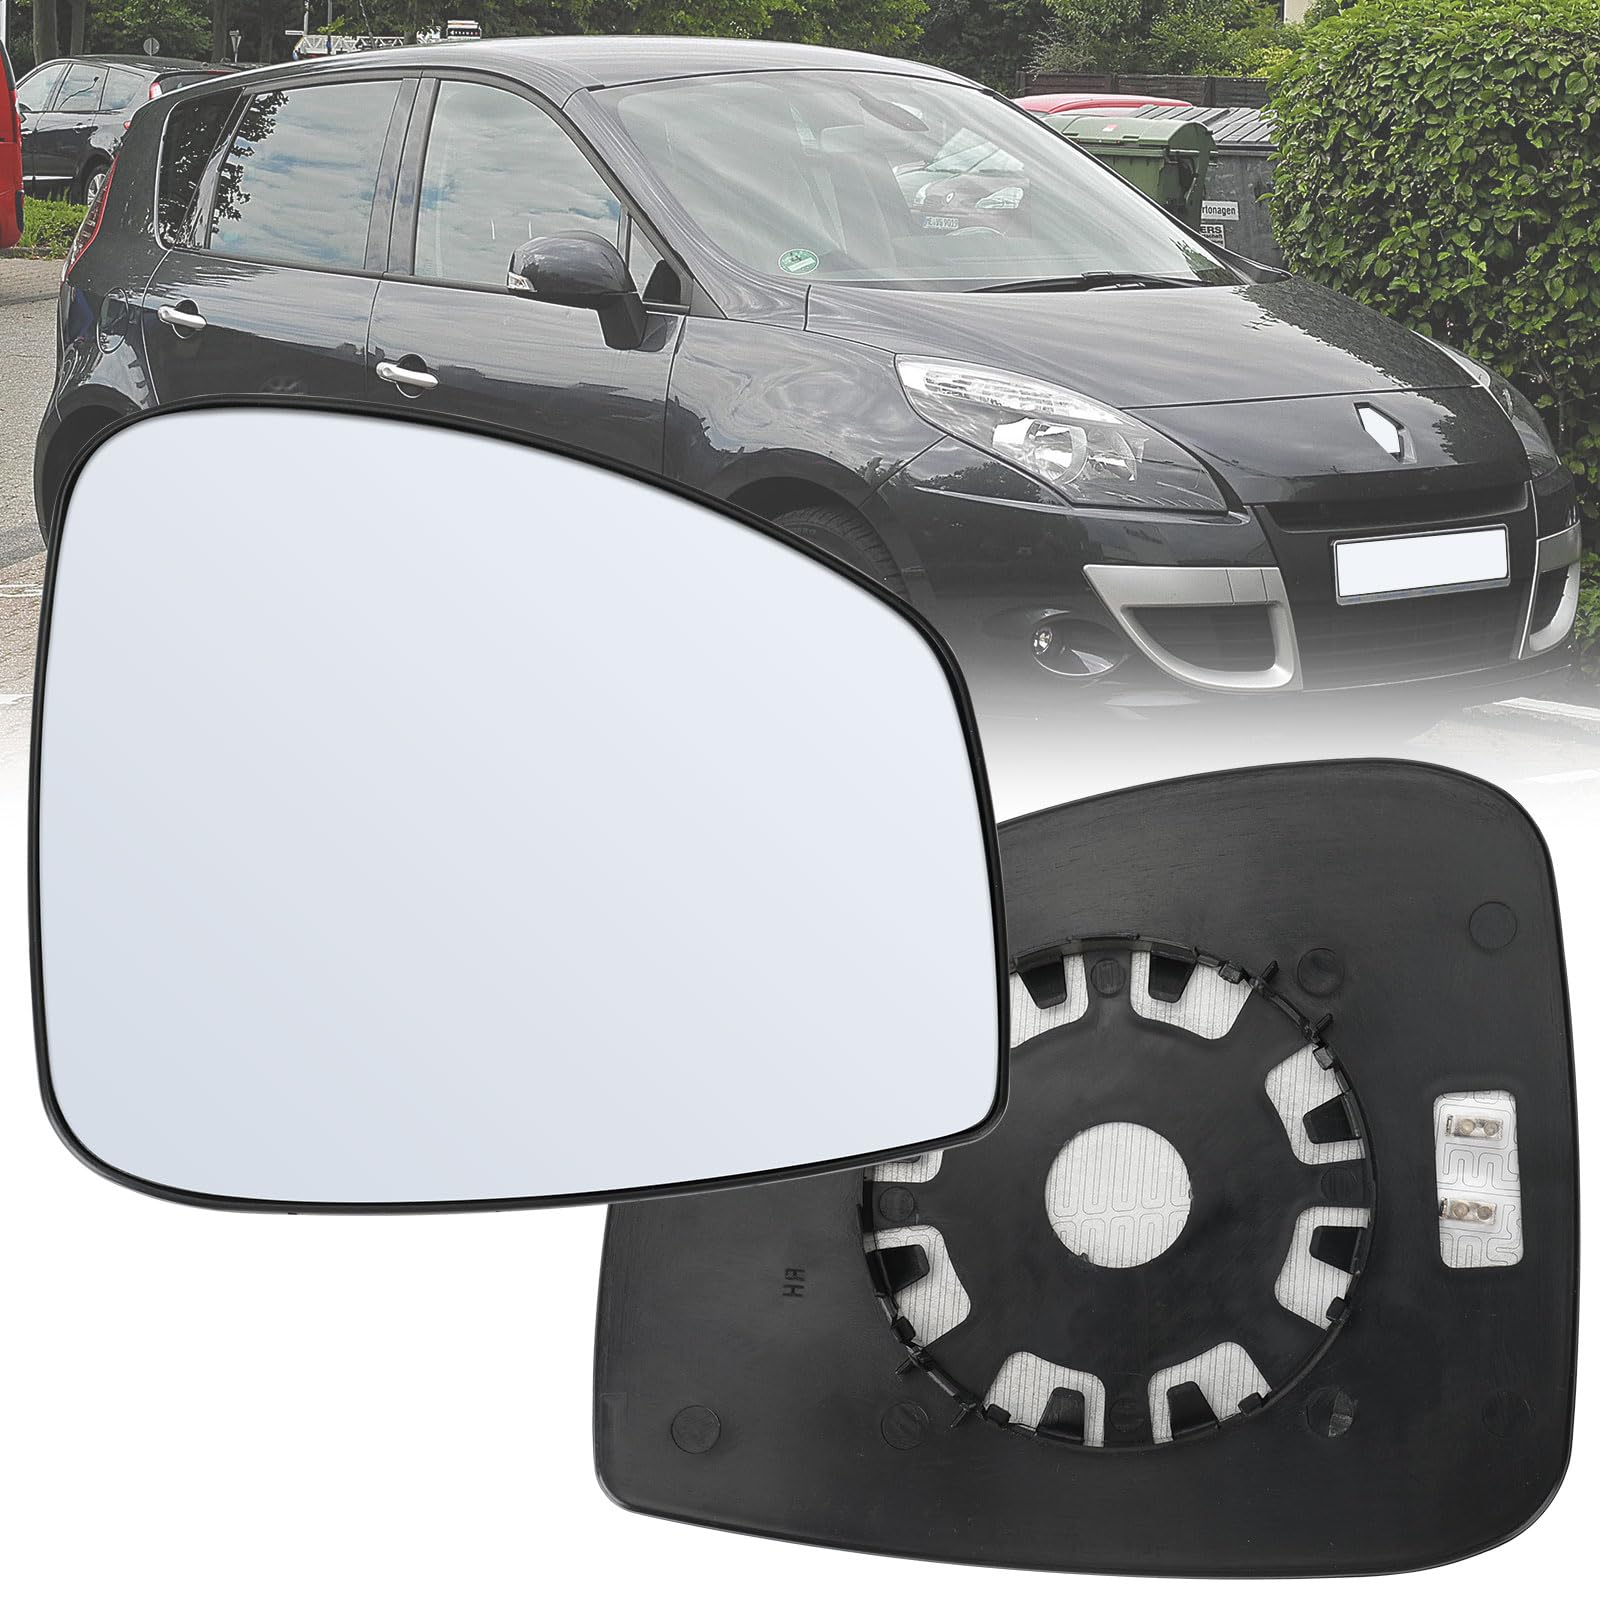 Spiegelglas Ersatz für Renault scenic MK3 2009-2015, Außenspiegel Glas Asphärisch, Außenspiegel Verstellbar Geeignet, Umkehrlinse Rückfahrglas Spiegel (Rechts) von JinsenTGG